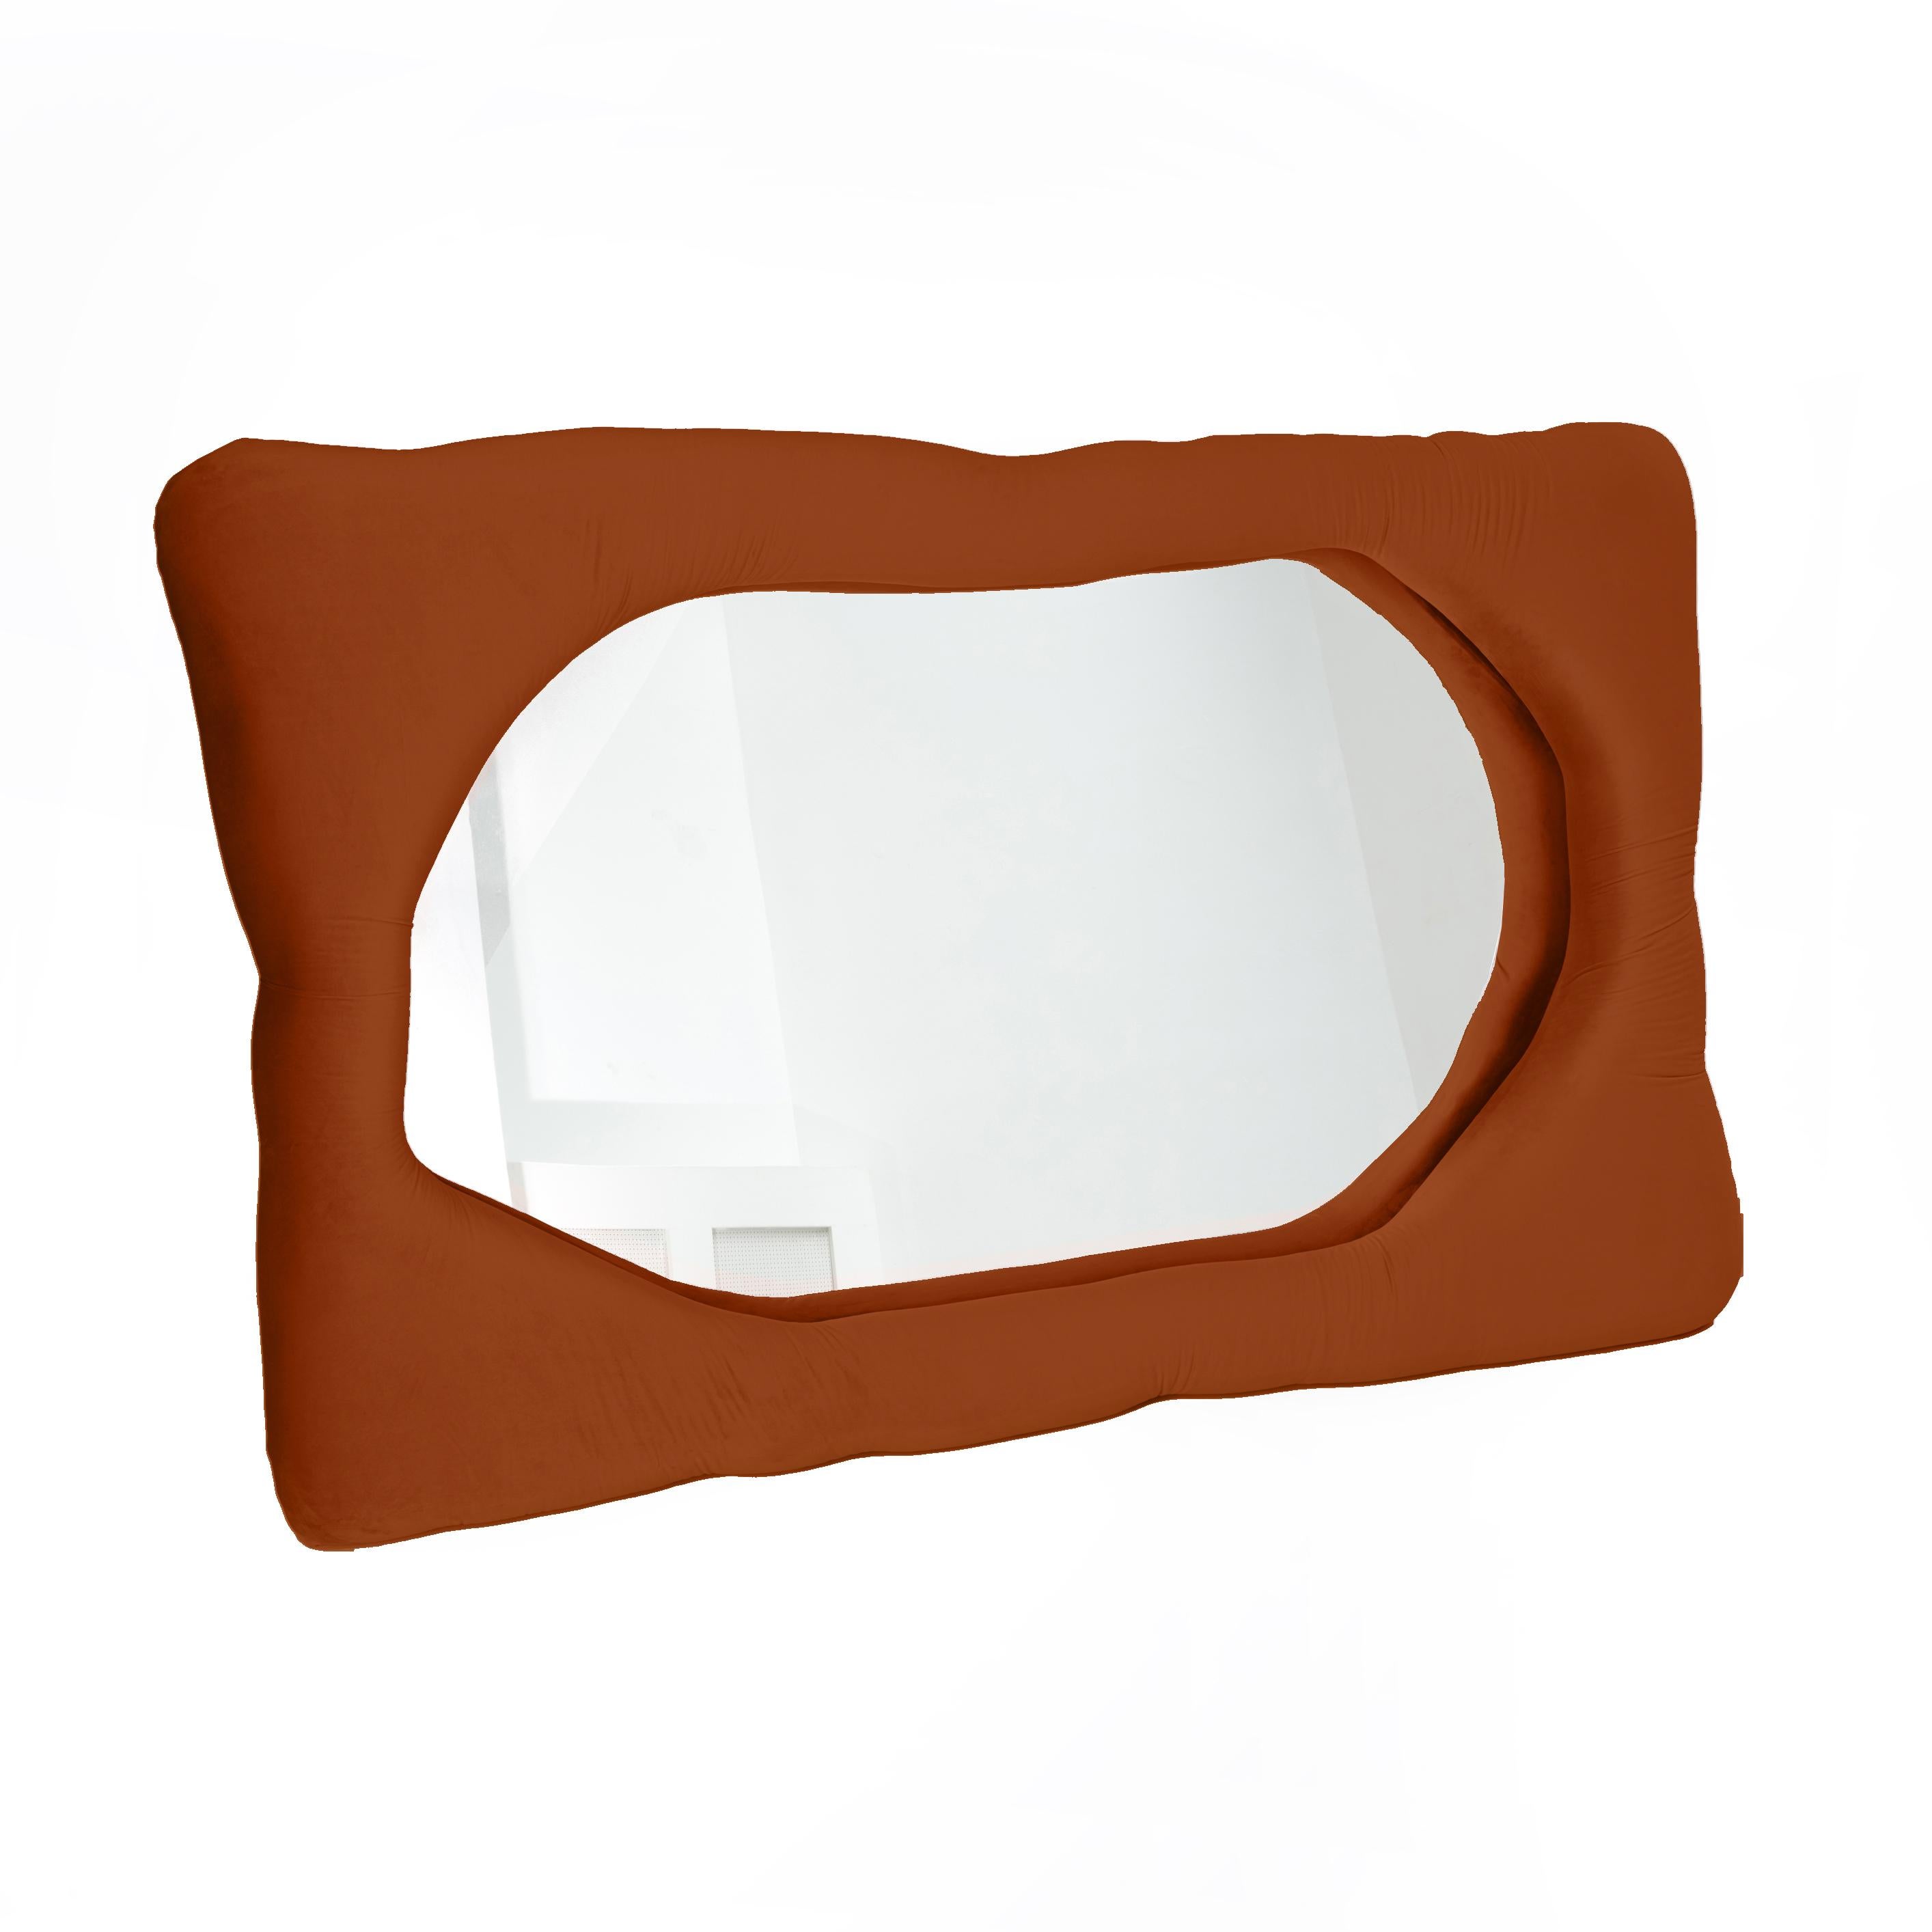 Biomorpher Spiegel von Brandi Howe

Samtstoff, Glas, Holz

Abgebildet: 68 x 45 x 5 Zoll.

Dieser Spiegel ist in verschiedenen Farben, Stoffen und Größen anpassbar.

Andere Größe verfügbar: 60 x 15 x 5 Zoll.

Die Vorlaufzeit für diesen Artikel